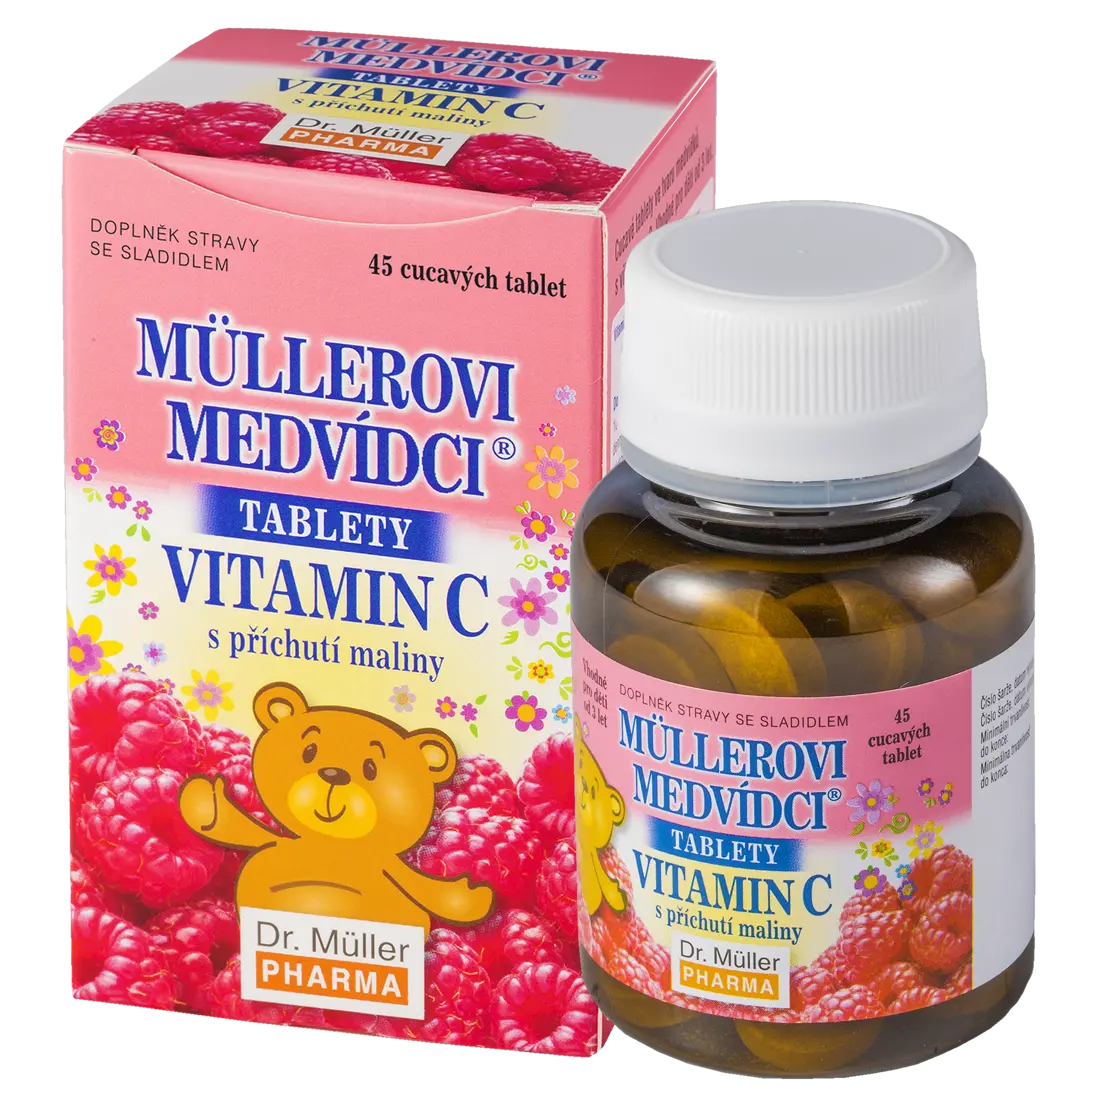 Müllerovi medvídci s vitaminem C s příchutí maliny 45 tbl